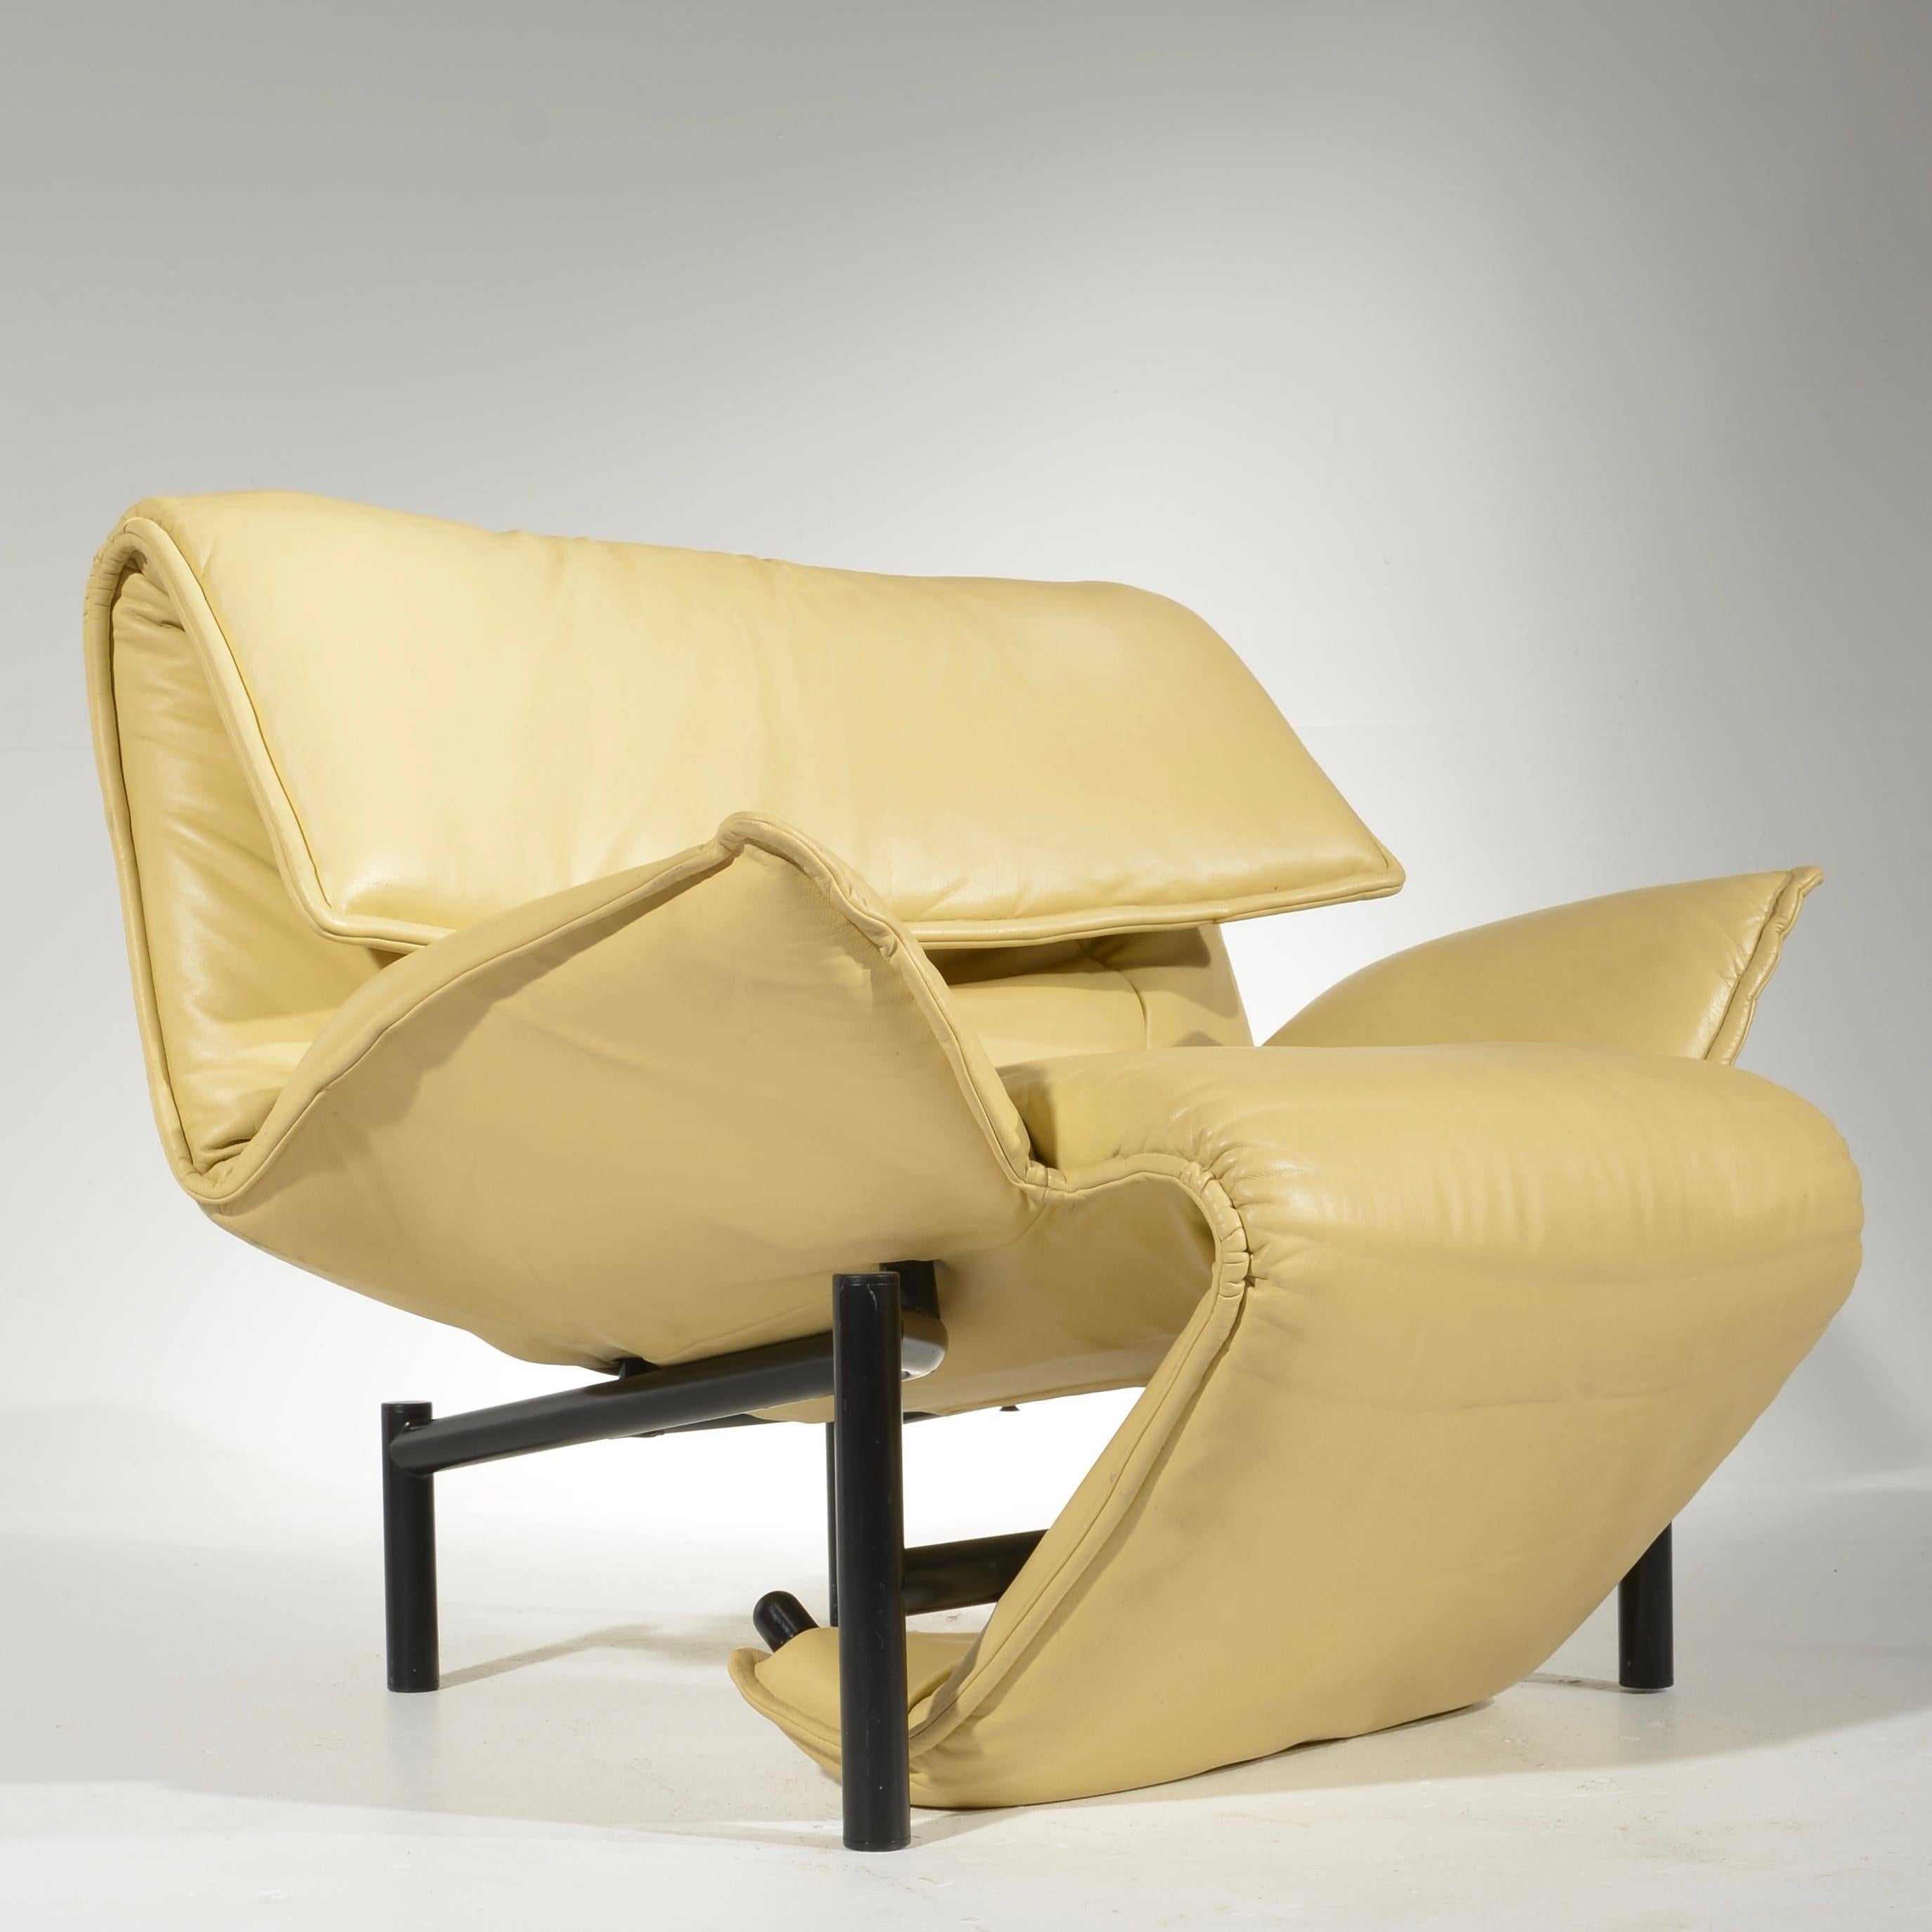 Chaise longue de véranda de Vico Magistretti pour Cassina, vers 1983. Le cadre intérieur en acier s'ajuste pour reconfigurer la chaise. La chaise repose sur des pieds tubulaires noirs et est recouverte d'un superbe cuir jaune pâle des années